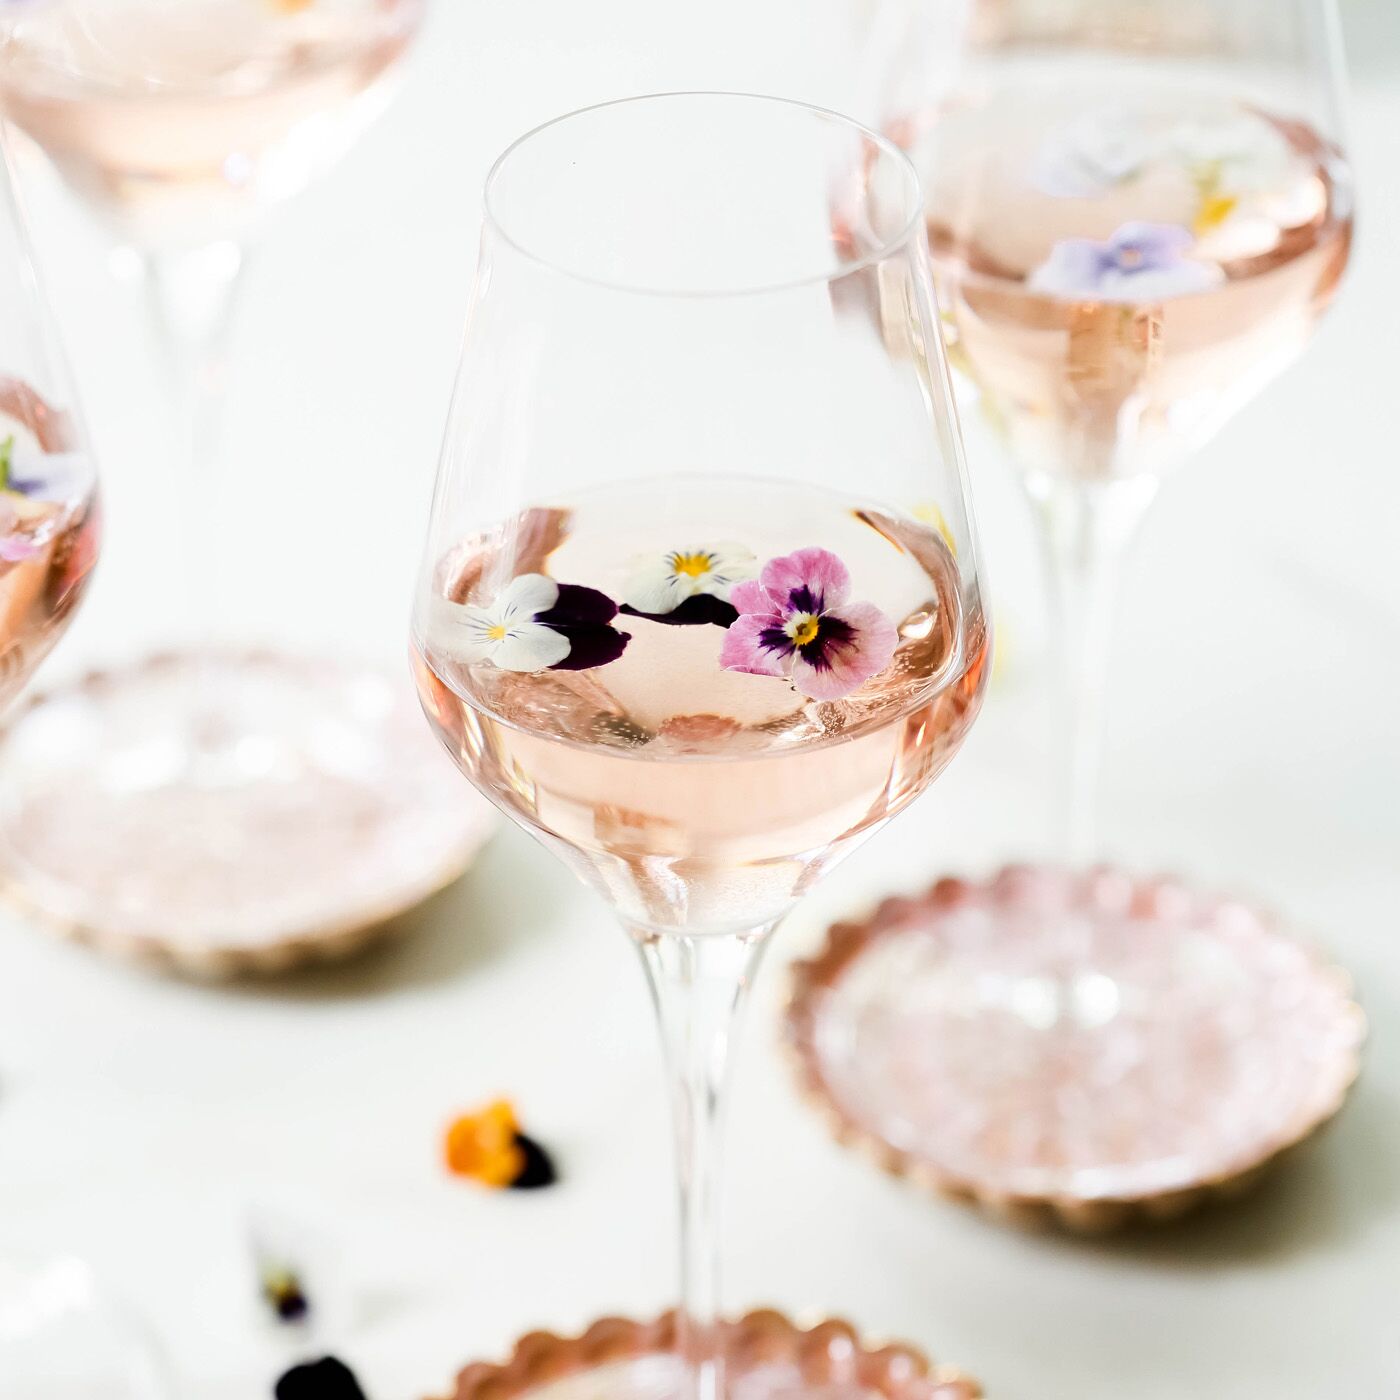 Vietri Contessa Clear Wine Glass, 9 oz - Luxury Italian Glassware